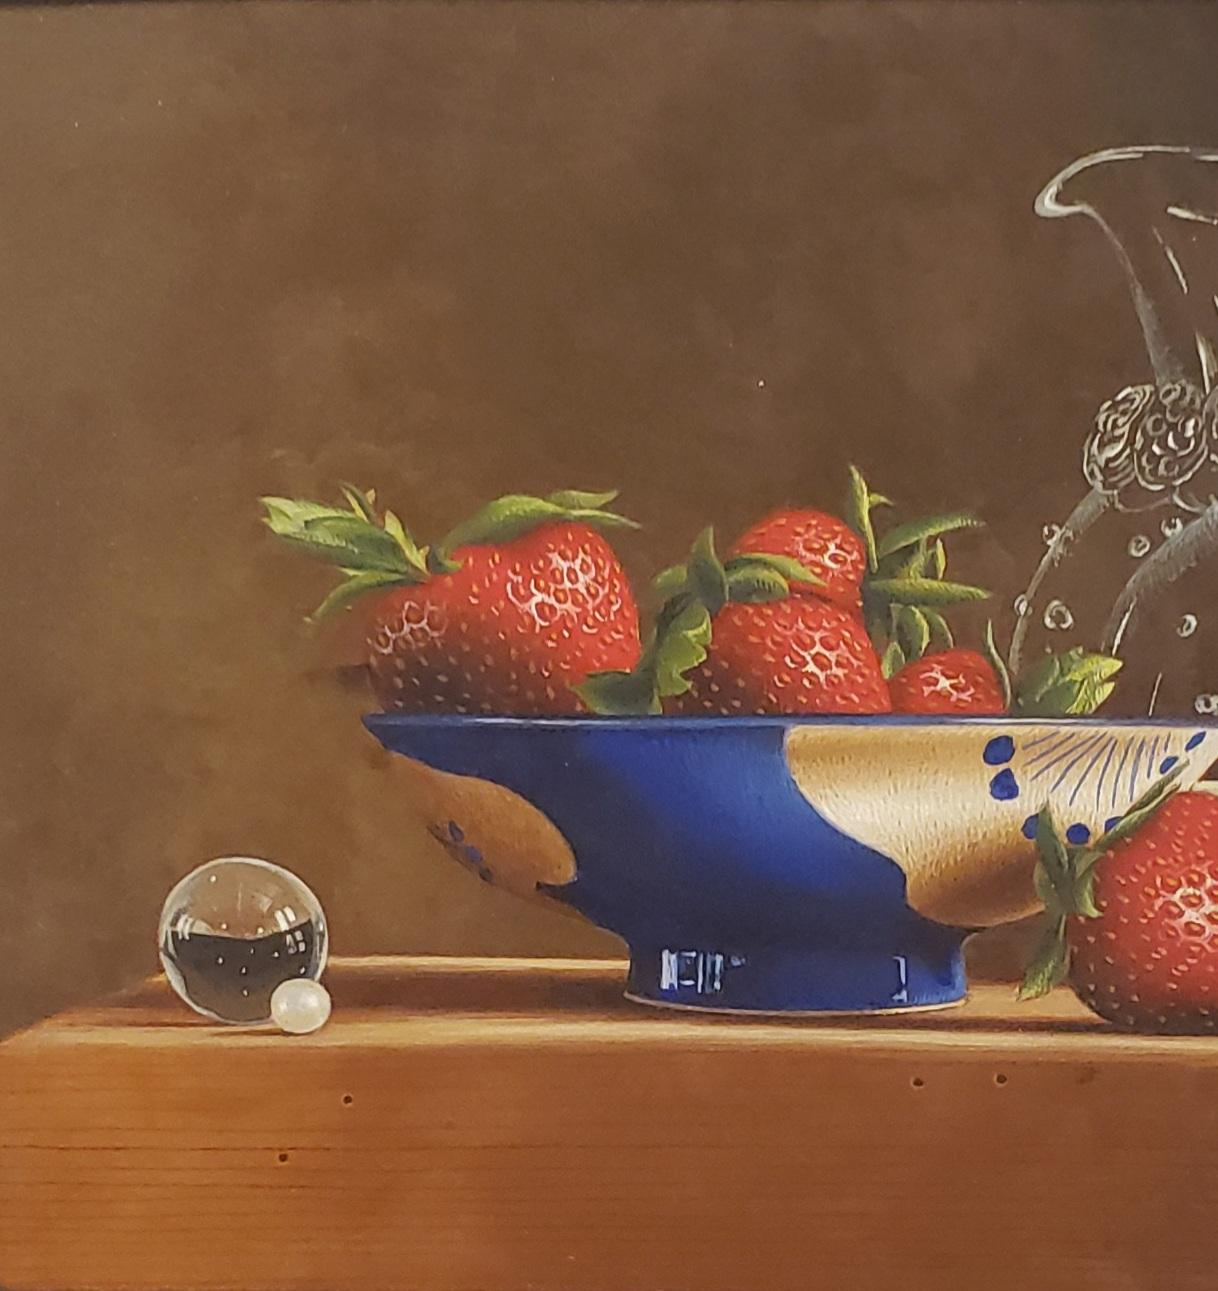 Erdbeer und Creme, Eitempera,  Realismus,  3D-Applikation, amerikanische Künstlerin (Braun), Still-Life Painting, von Mark Thompson